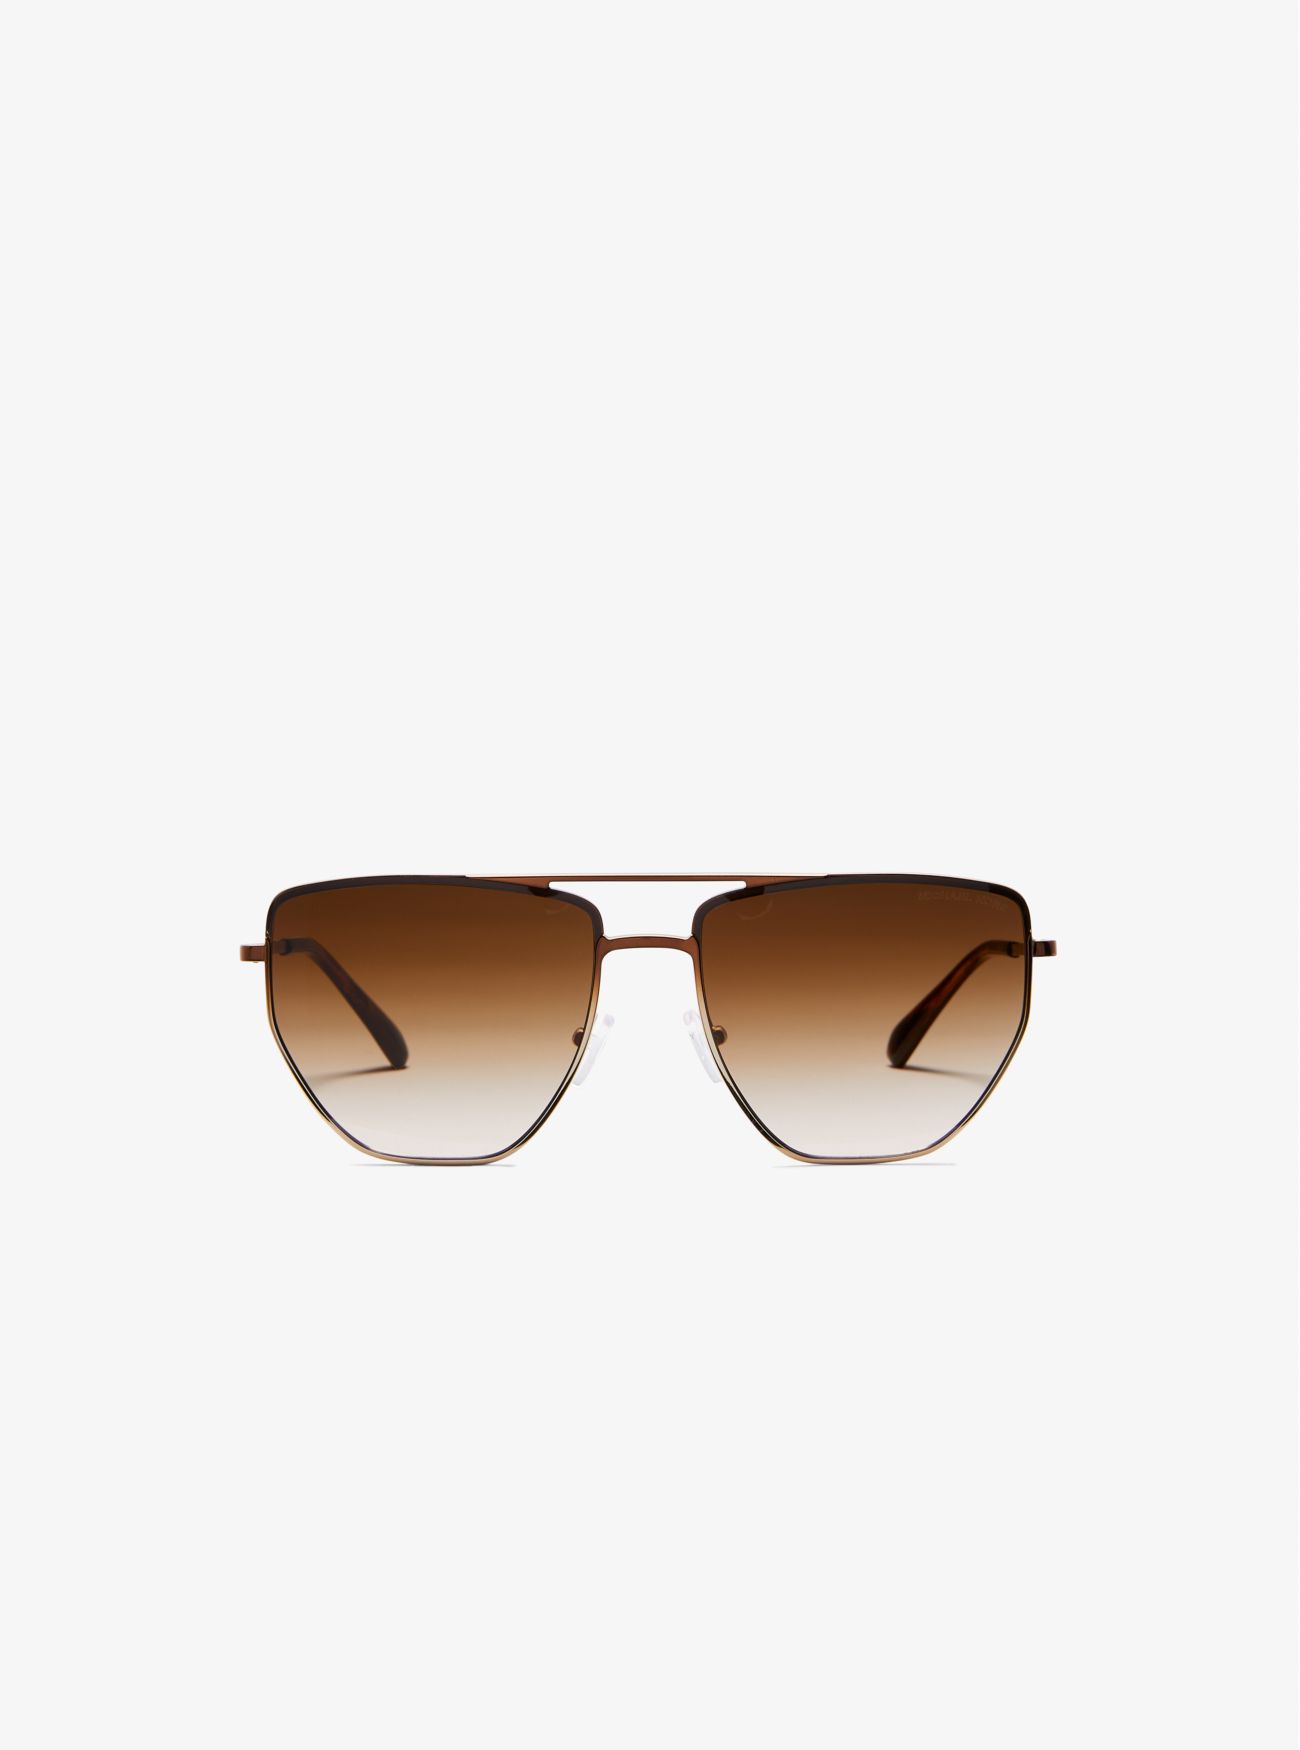 MK Paros Sunglasses - Natural - Michael Kors